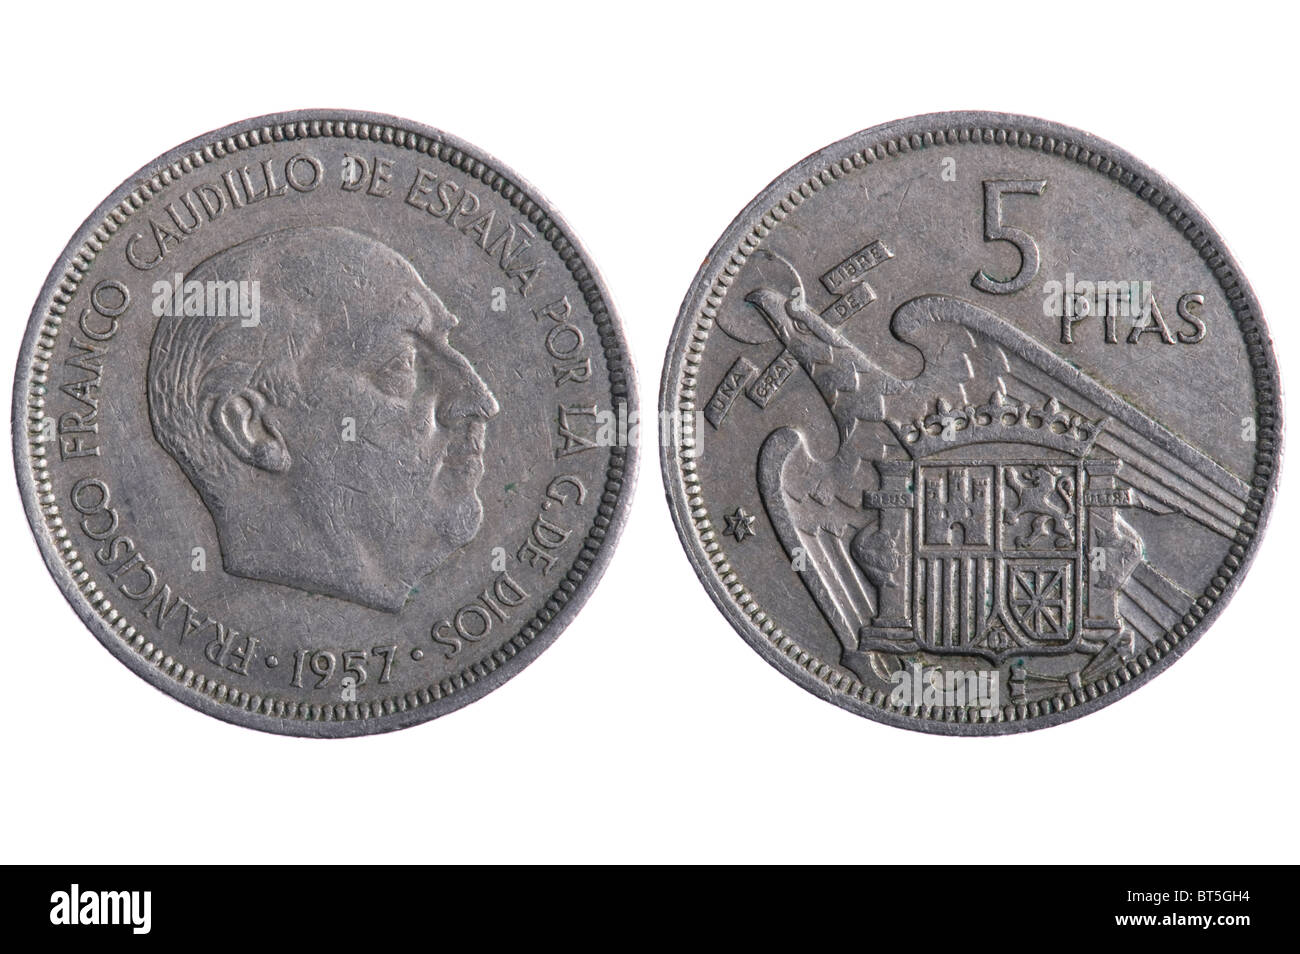 Objekt auf weiß - Spanien Münzen hautnah Stockfoto